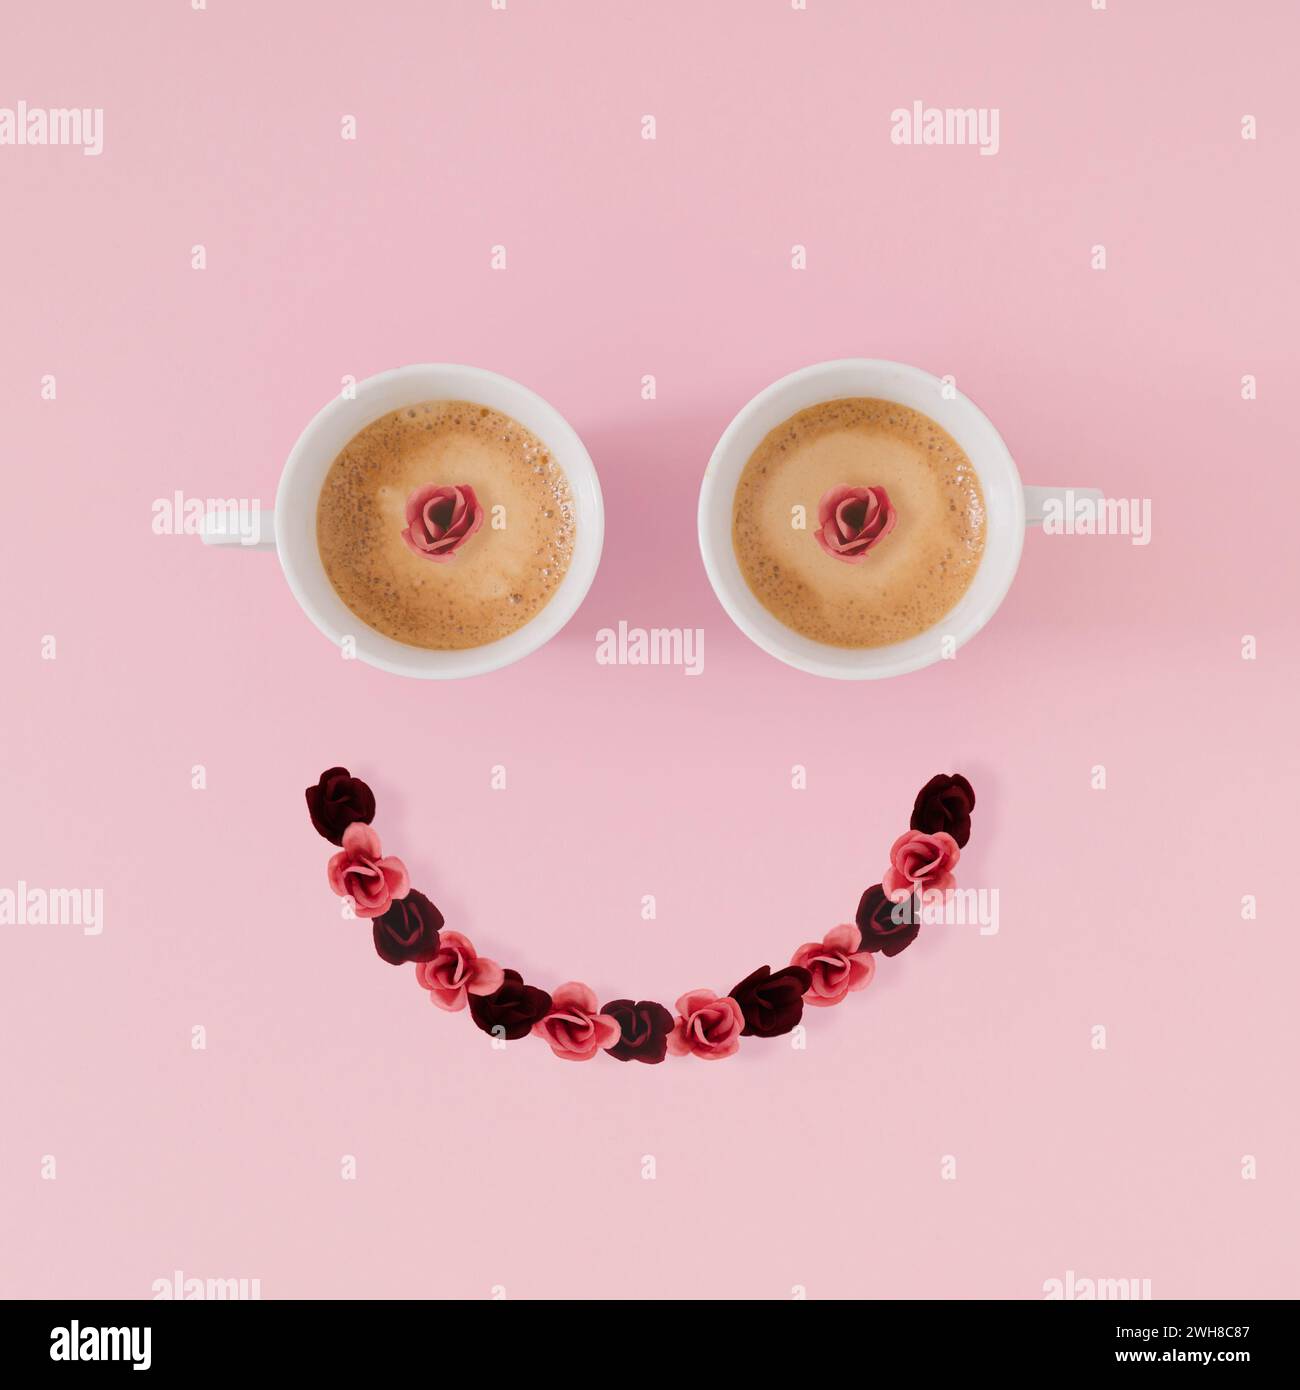 Layout des Smiley Emoticon gemacht mit Kaffeetassen und Blumen auf rosa Hintergrund. Minimales Kaffeekonzept. Kreatives positives Denken und gute Laune-Idee. Stockfoto